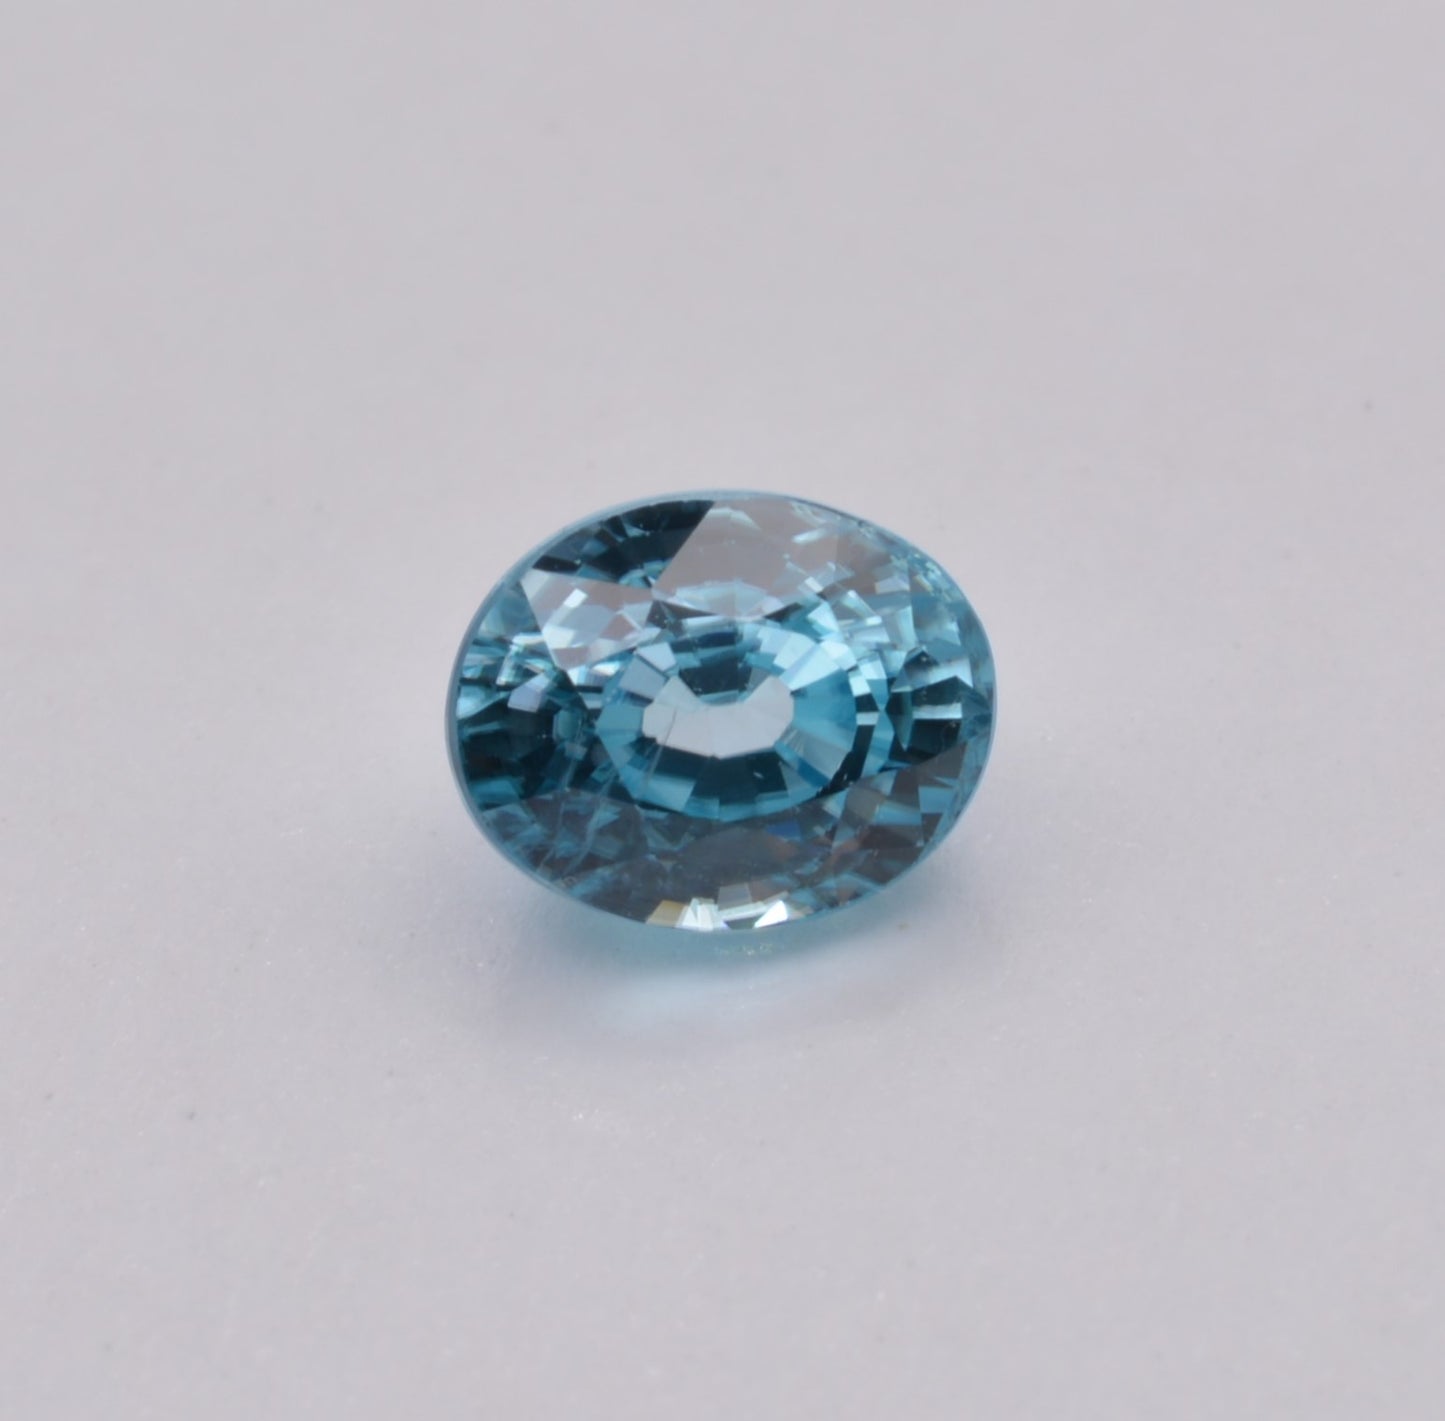 Zircon Bleu Ovale 3,09ct - pierre précieuse - gemme